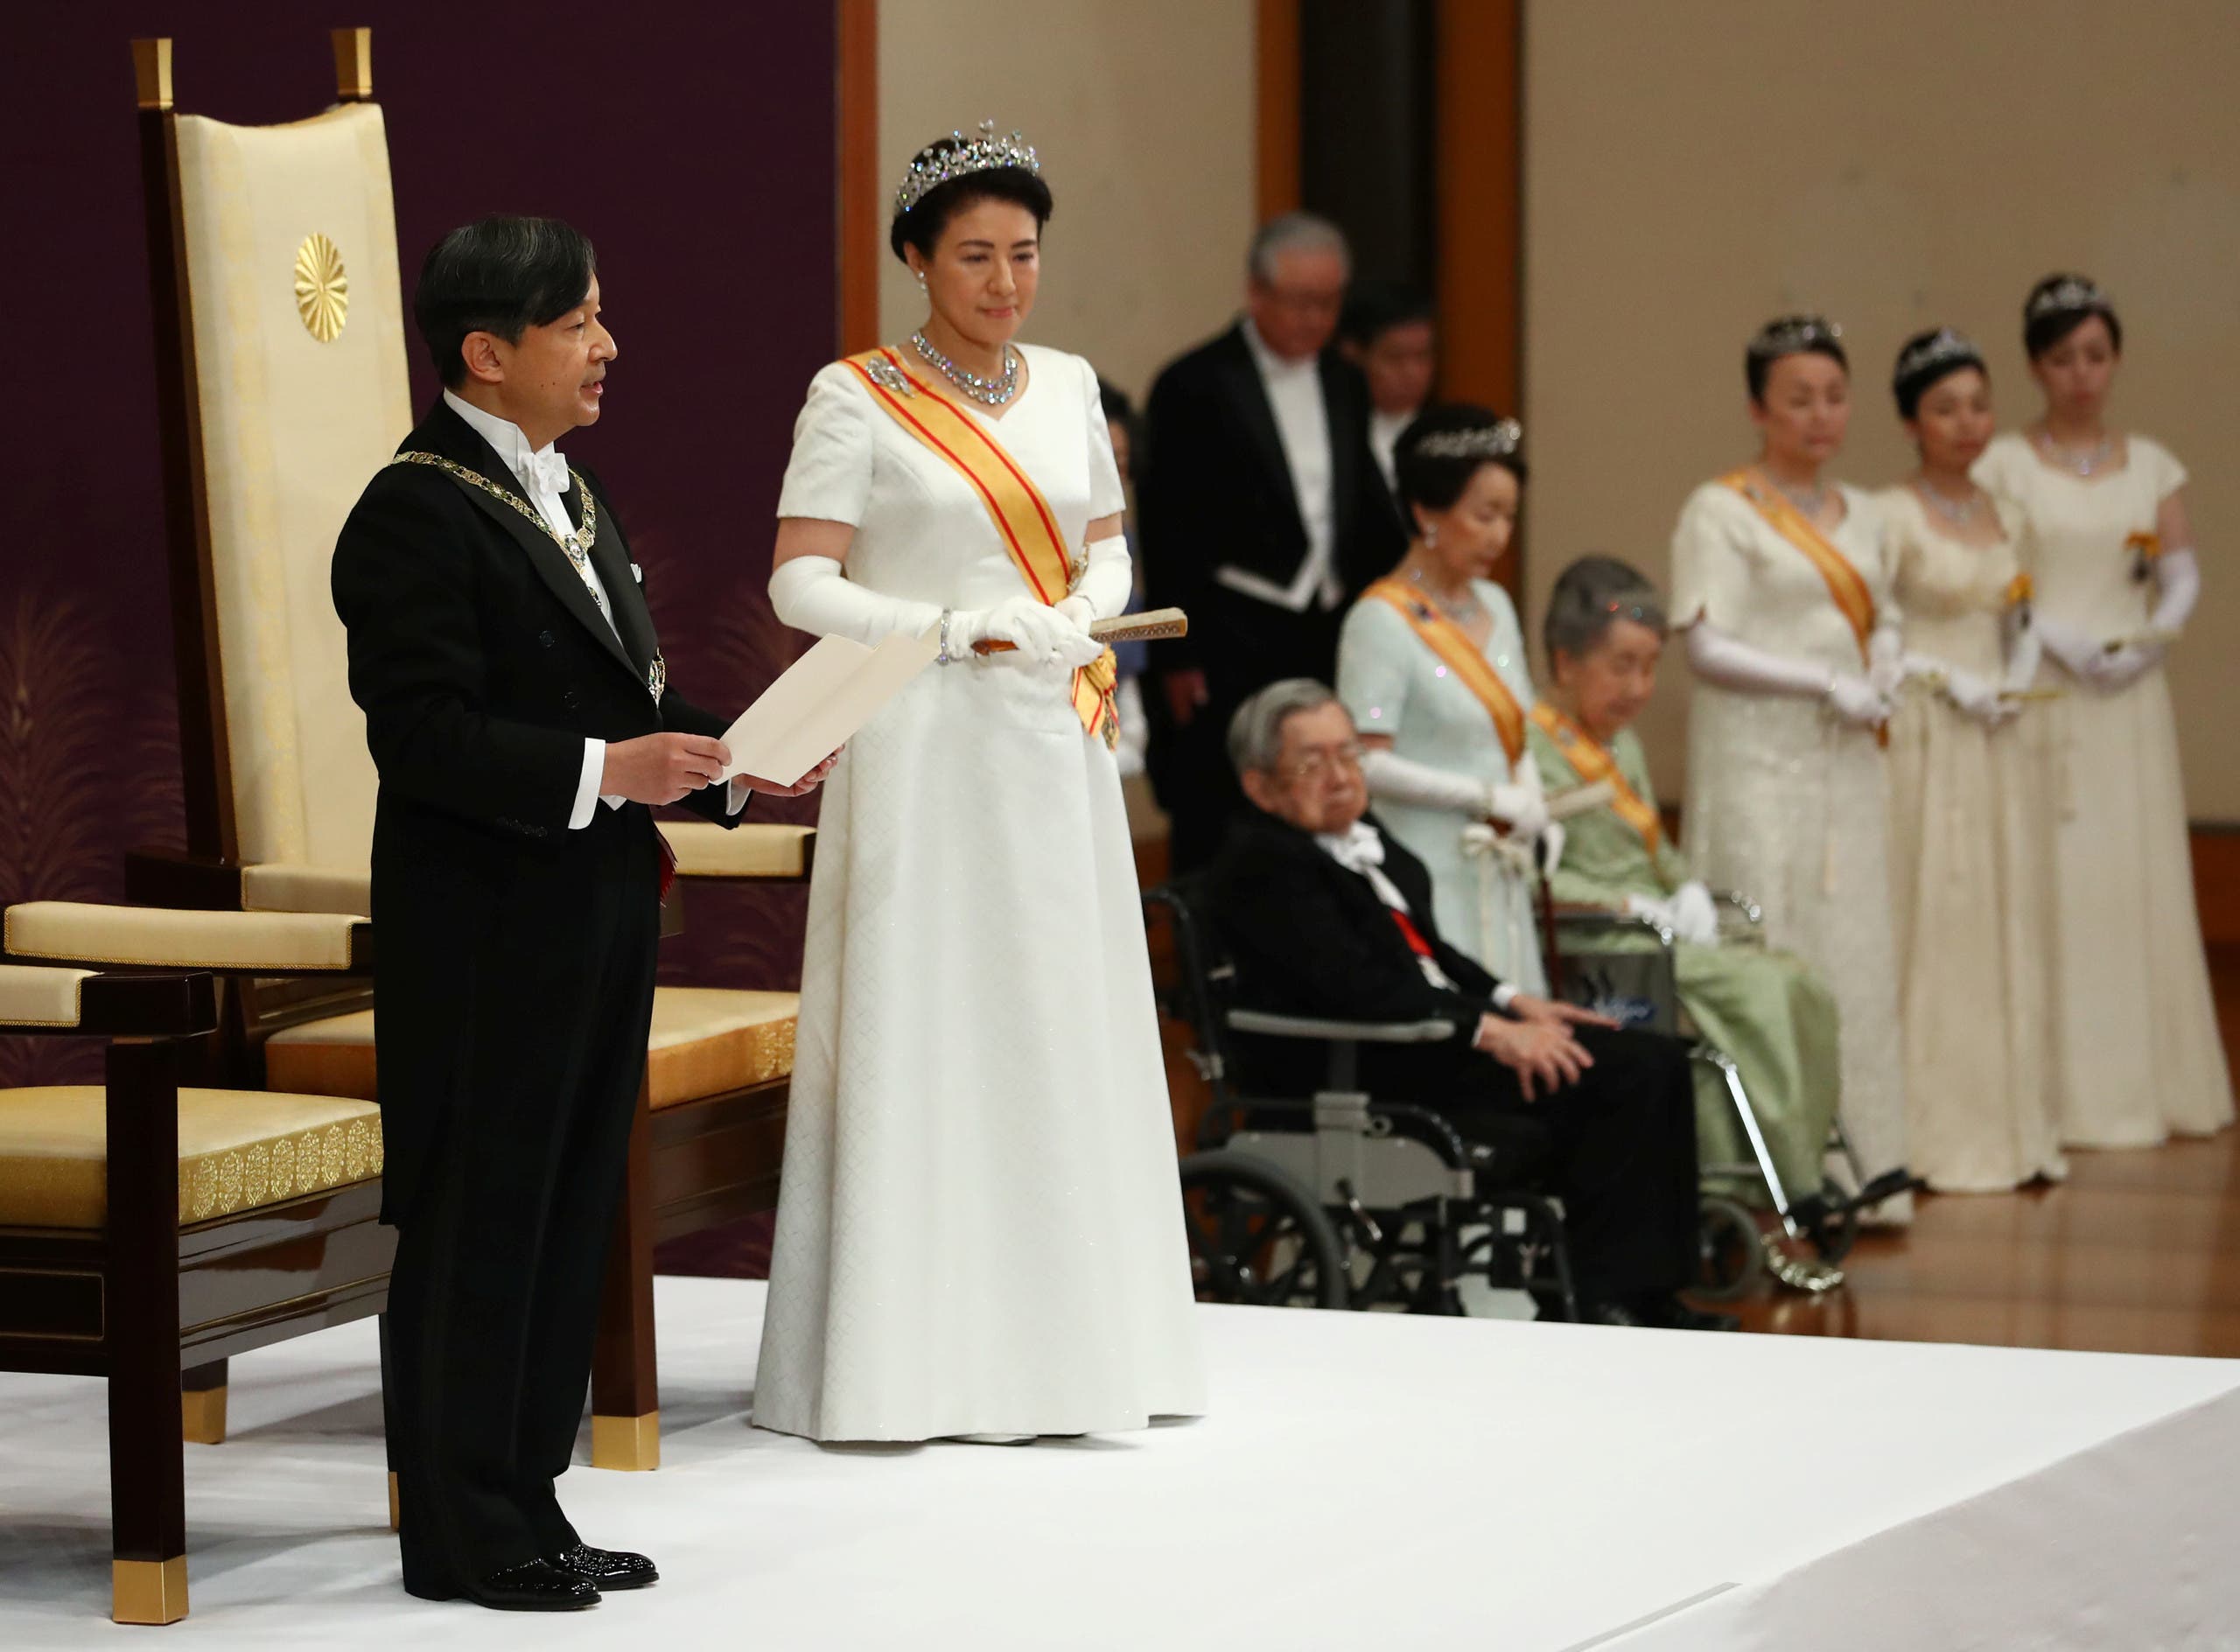 بخطابه الأول إمبراطور اليابان يتعهد بالتقرب من الشعب Ce0df1f2-8e7f-4f9d-b193-95bcddc990c2